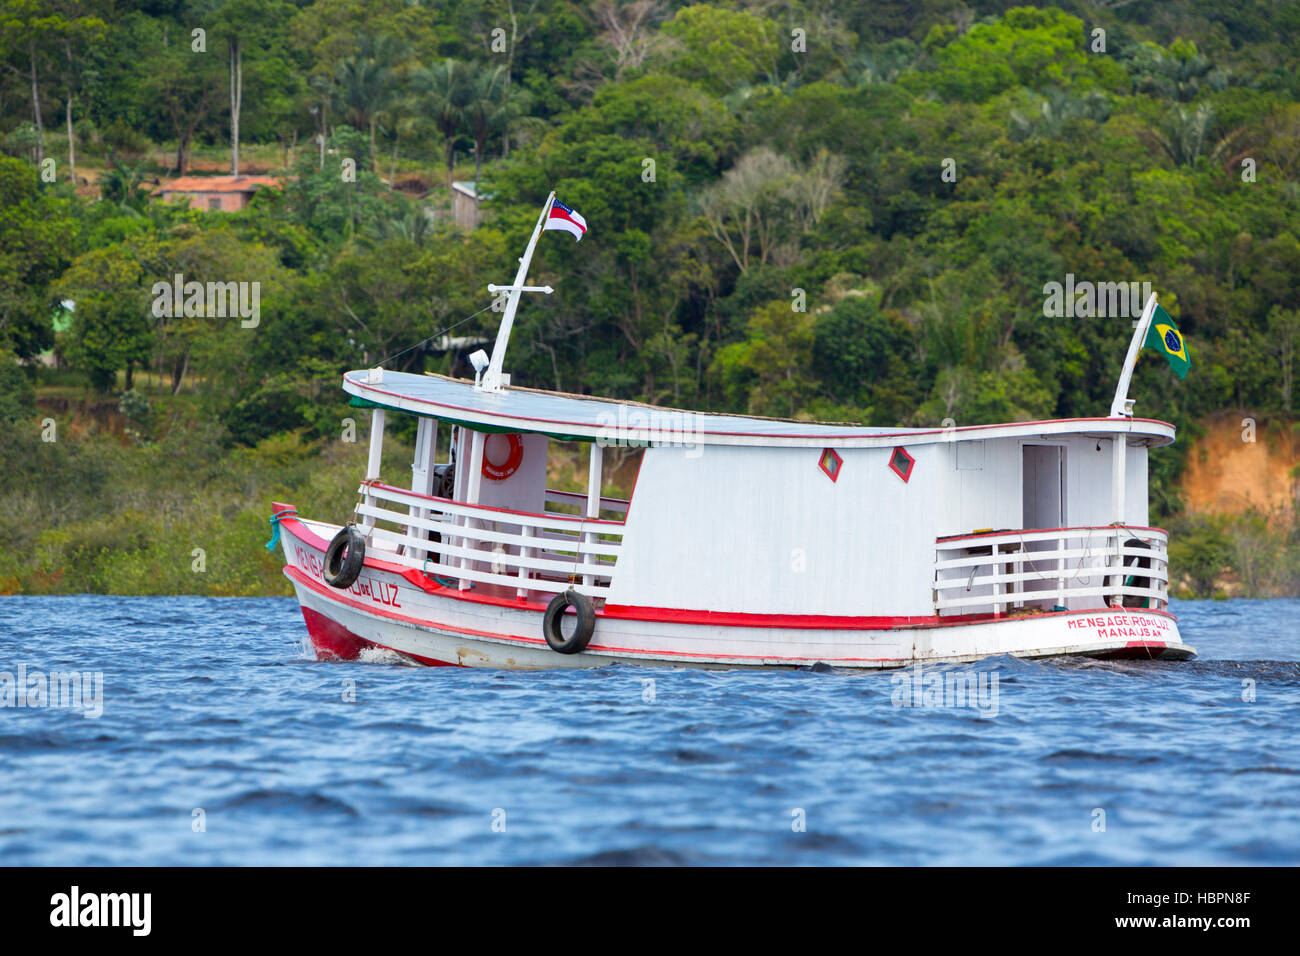 Typisch Amazon Holzboot auf Rio Negro in Manaus, Brasilien Stockfotografie  - Alamy